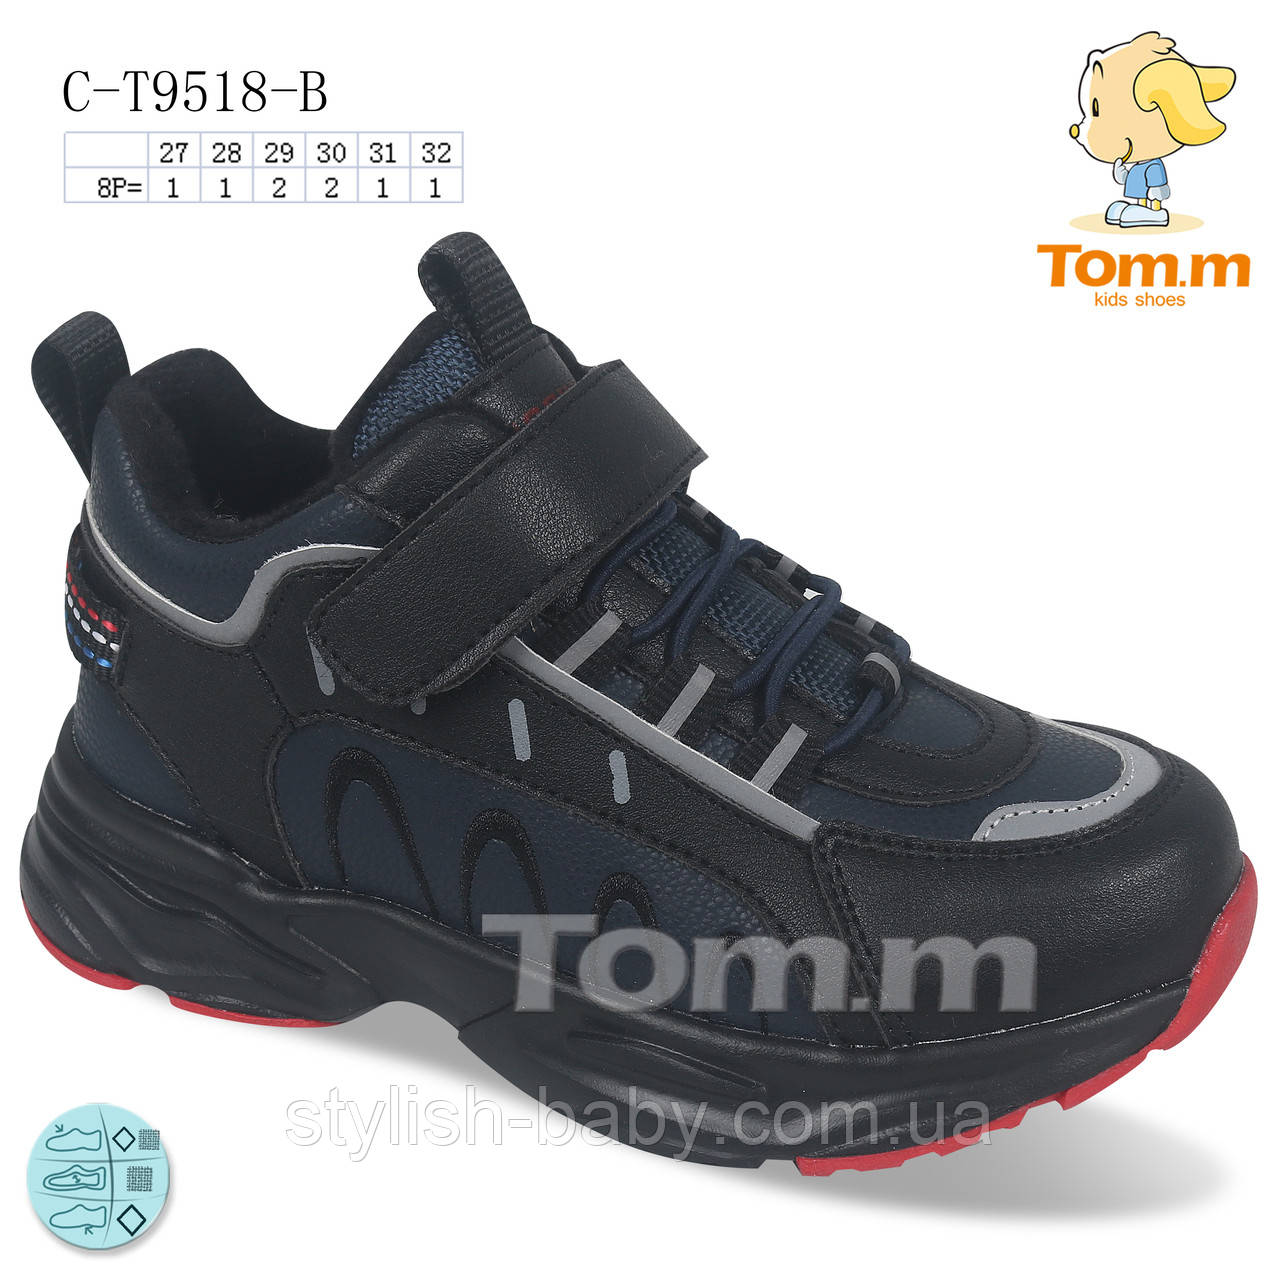 Дитяче взуття оптом. Дитячий демісезонний взуття 2021 бренду Tom.m для хлопчиків (рр. з 27 по 32)